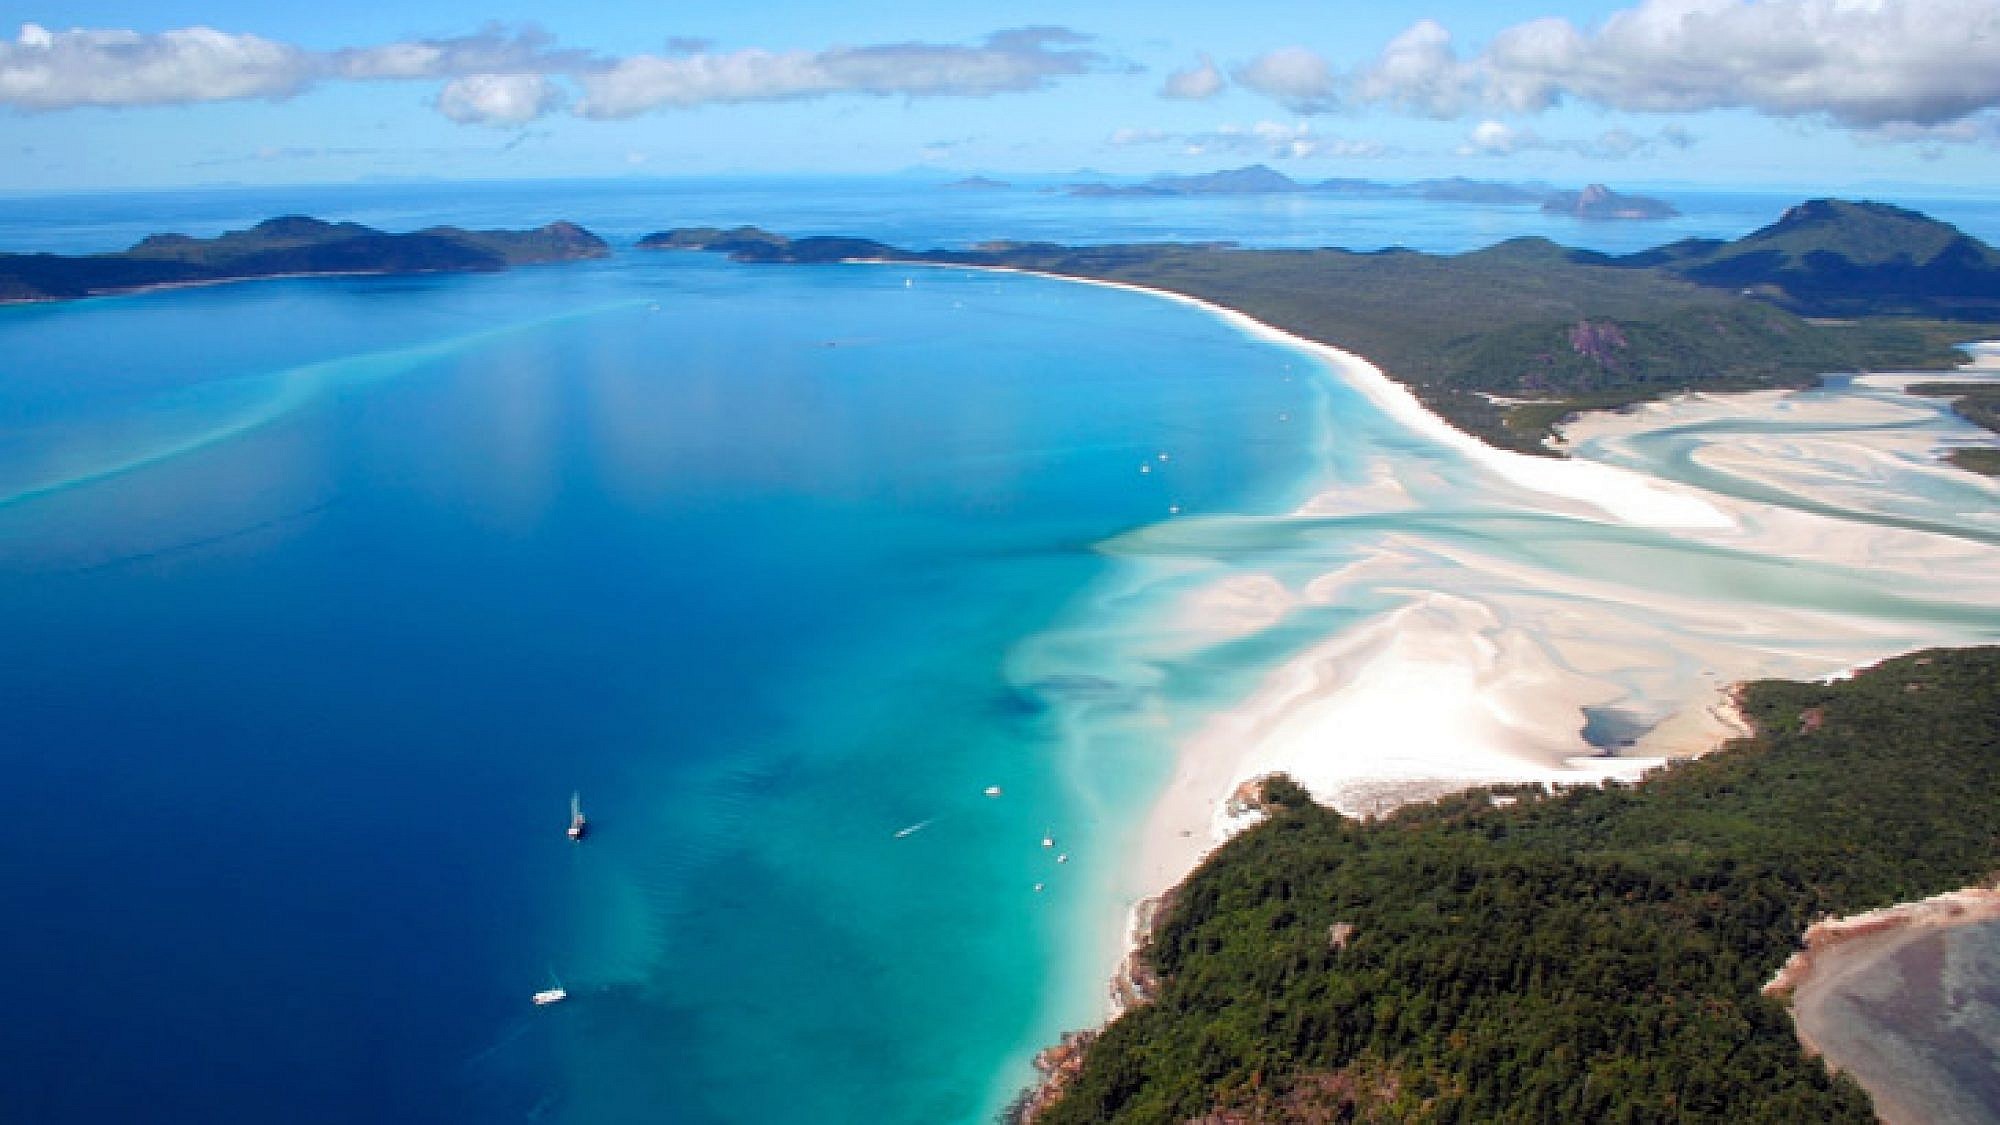 חוף וייטהייבן שבאוסטרליה. רצועת חול צחורה של שבעה קילומטרים נמתחת לאורך האי וייטסנדיי הגובלת במים צלולים להפליא | צלם: א.ס.א.פ קריאייטיב | Deb22 , Shutterstock